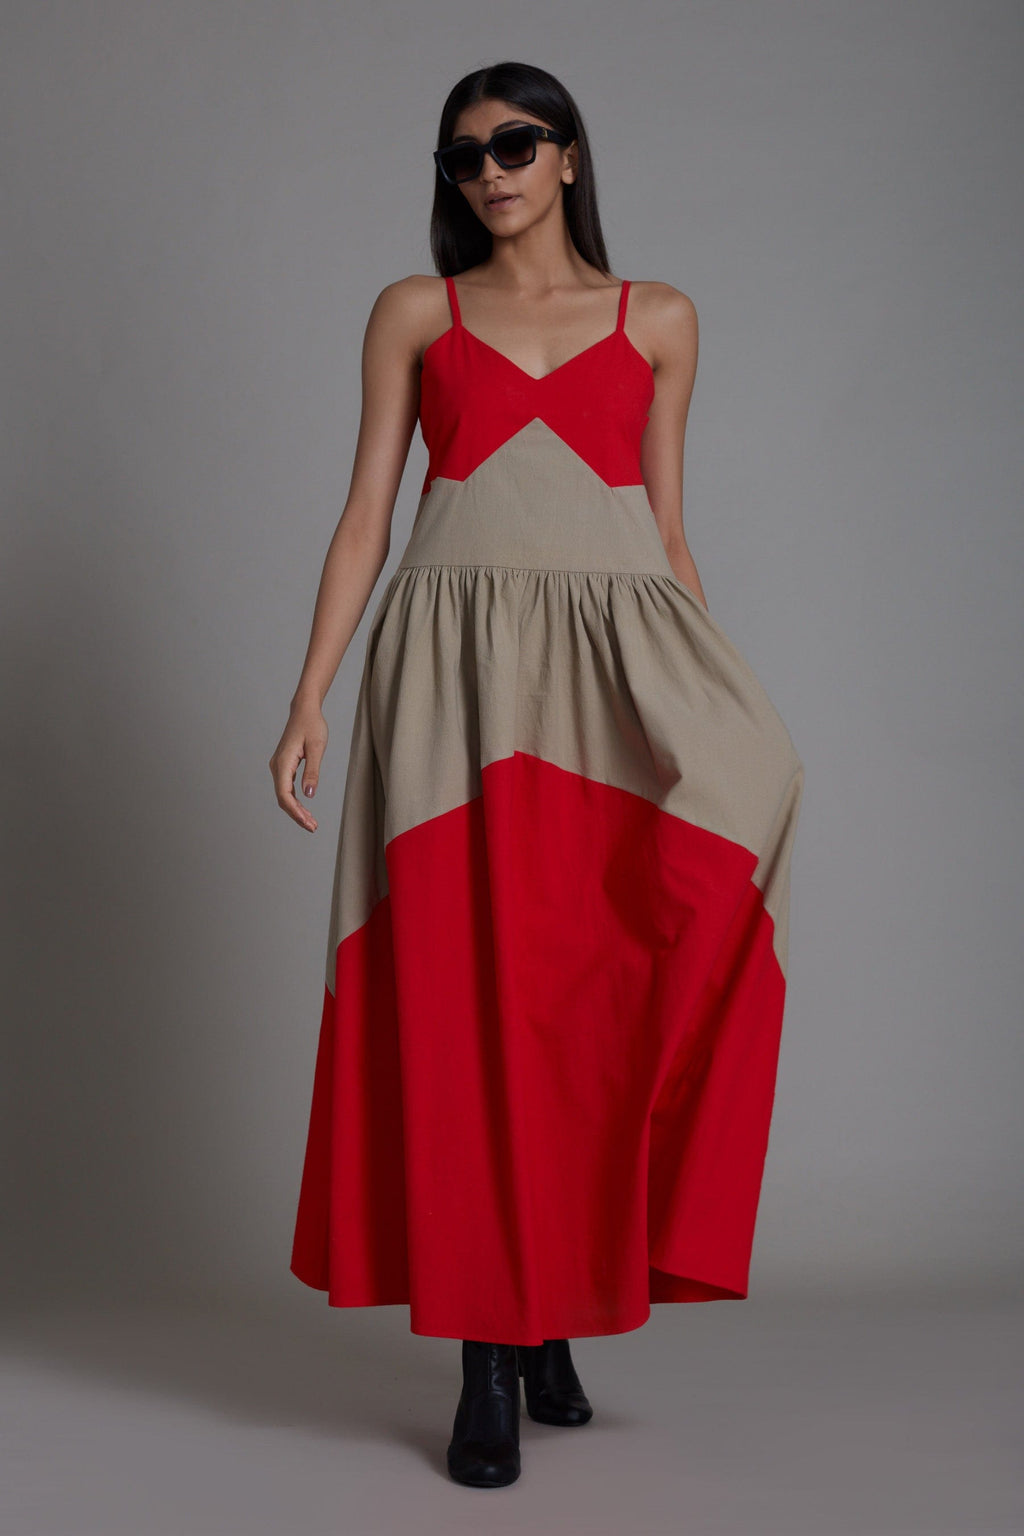 Mati Dresses XS Strap Red & Beige Dress